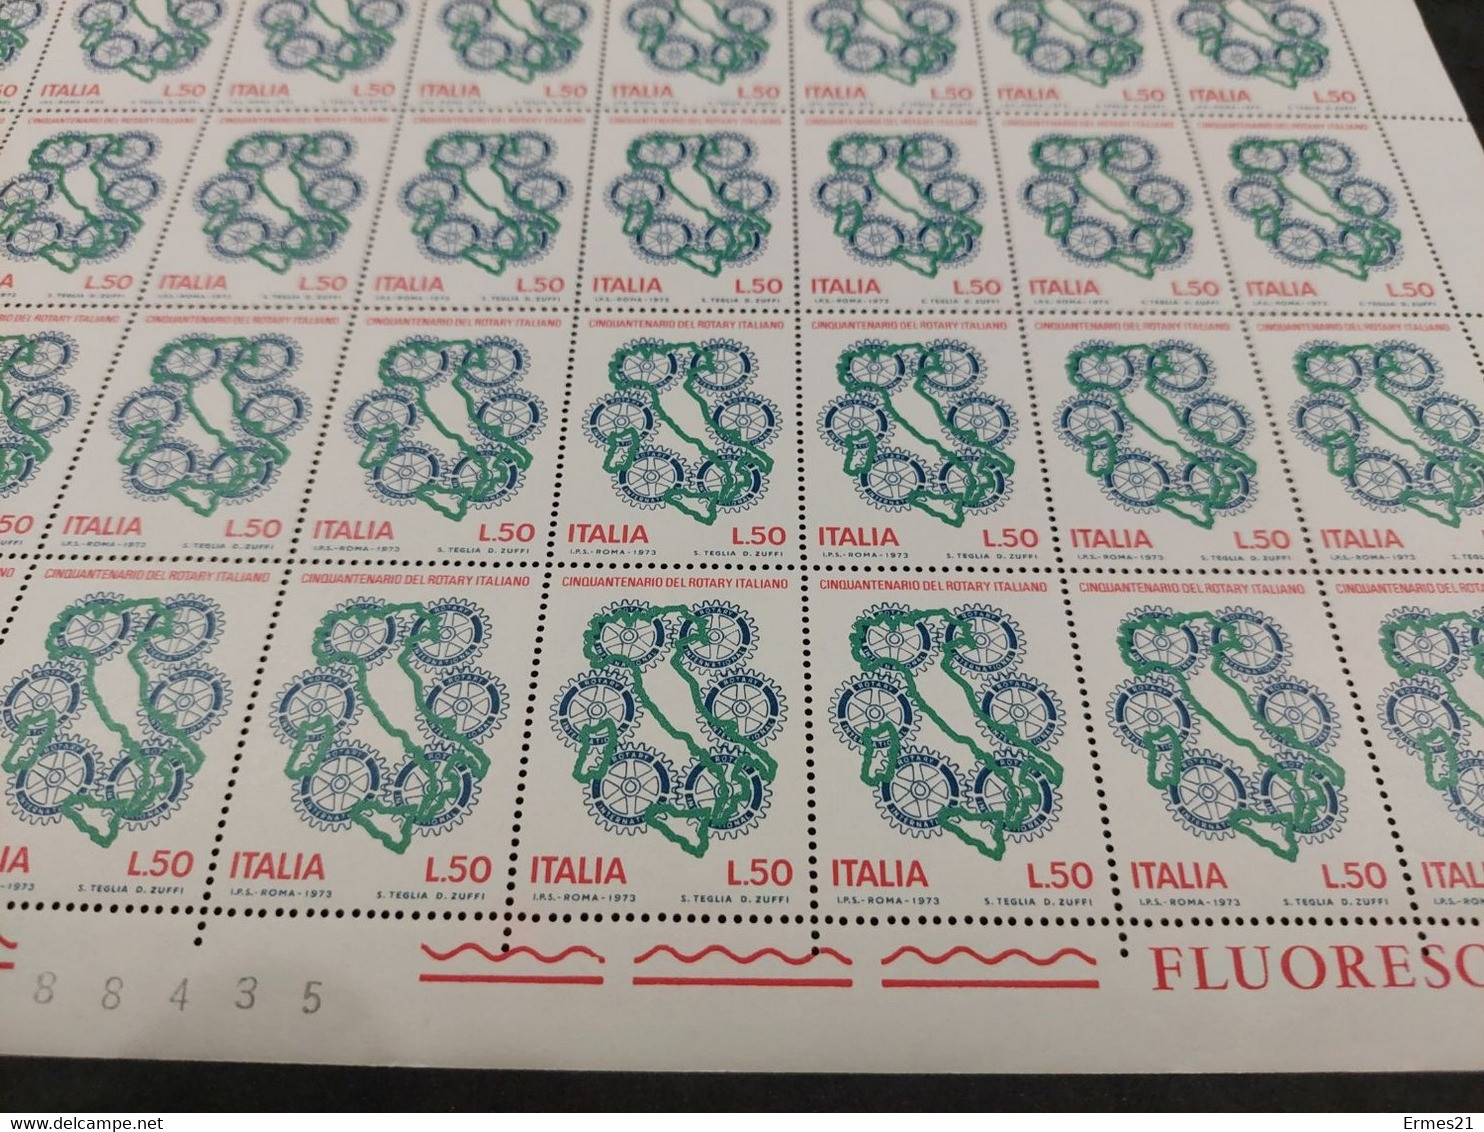 Francobolli Cinquantenario Del Rotary Italiano. 1973. Valore 50 Lire. Nuovi. Condizioni Eccellenti. Foglio Intero Di 50 - Fogli Completi